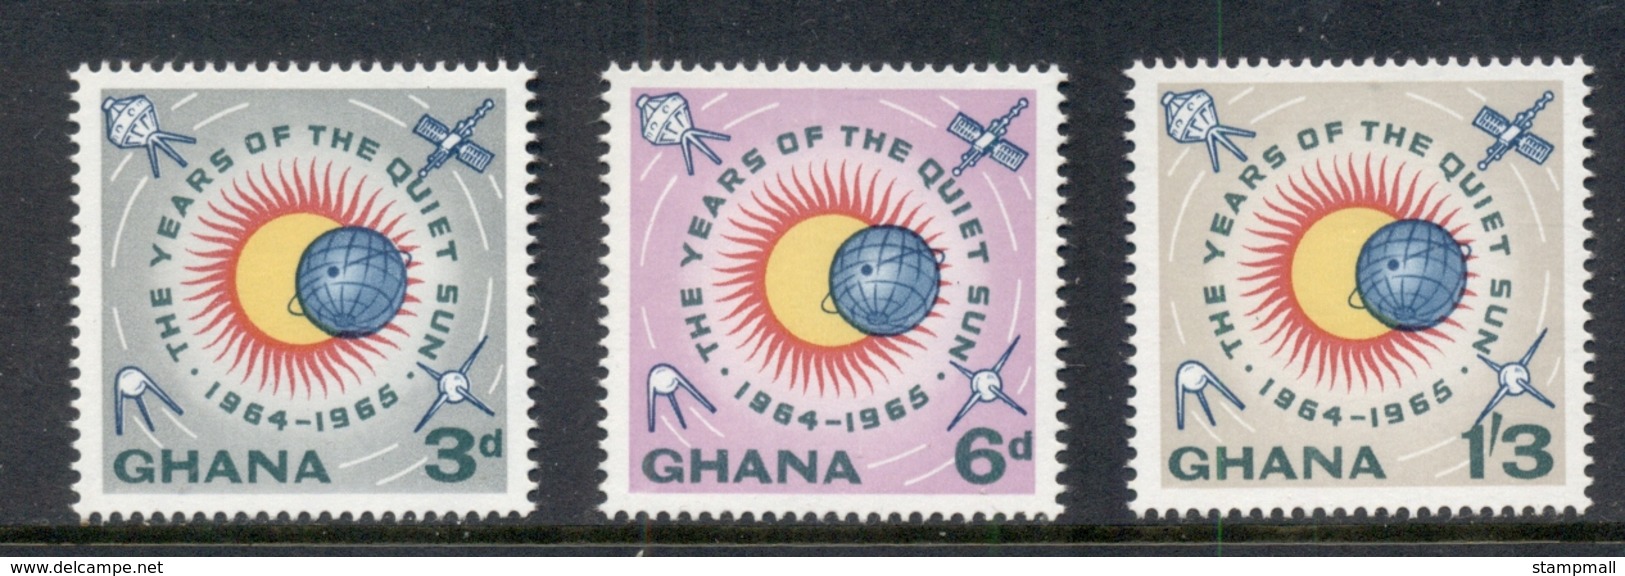 Ghana 1964 Quiet Sun Year New Colours MUH - Ghana (1957-...)